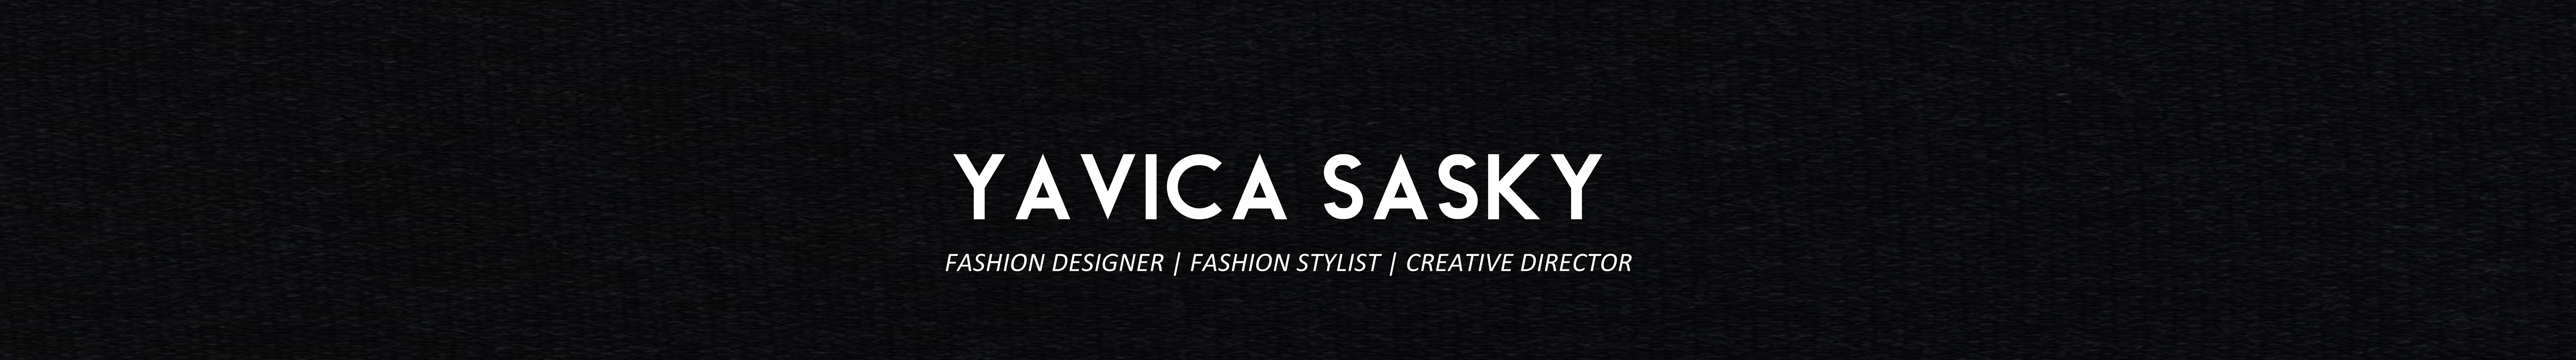 yavica sasky's profile banner